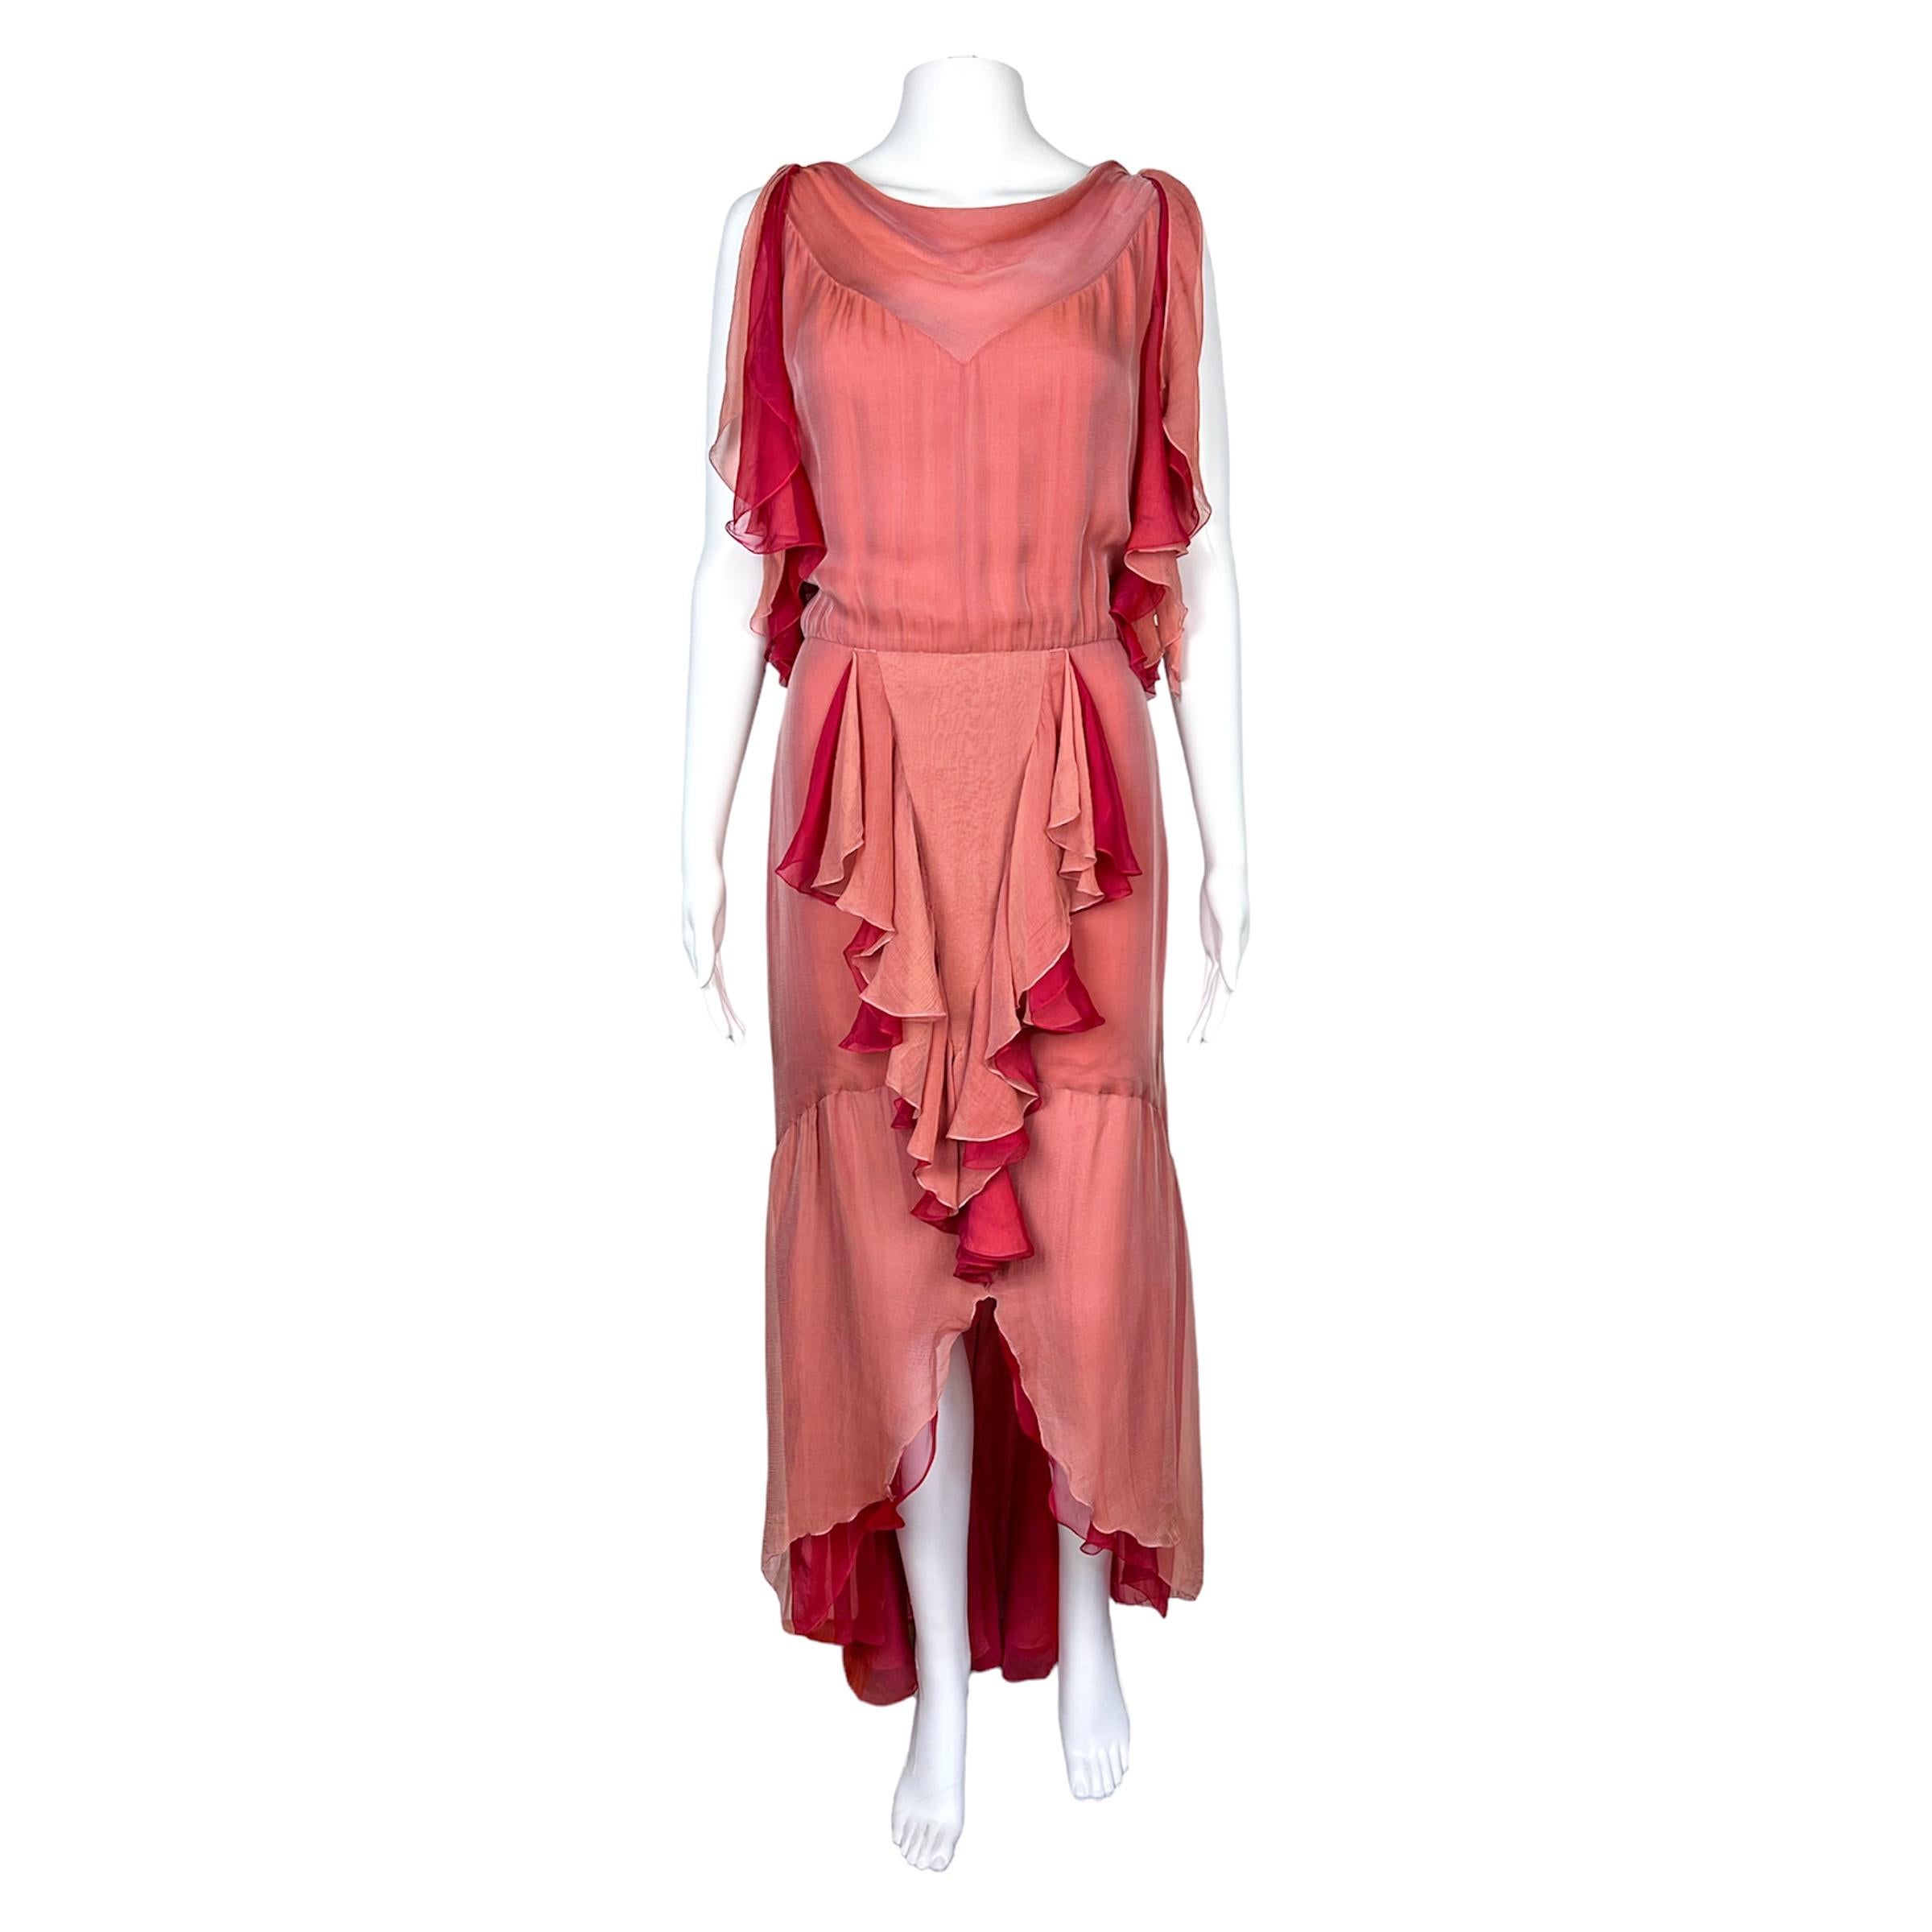 Wunderschönes, zweifarbiges, rosafarbenes Chanel by Karl Lagerfeld Kleid aus Seidenchiffon mit Rüschen und vorderem Schlitz aus der Spring Summer 2001 Kollektion, wie sie auf dem Laufsteg dieser Saison zu sehen war. 

Die Größe auf dem Etikett ist